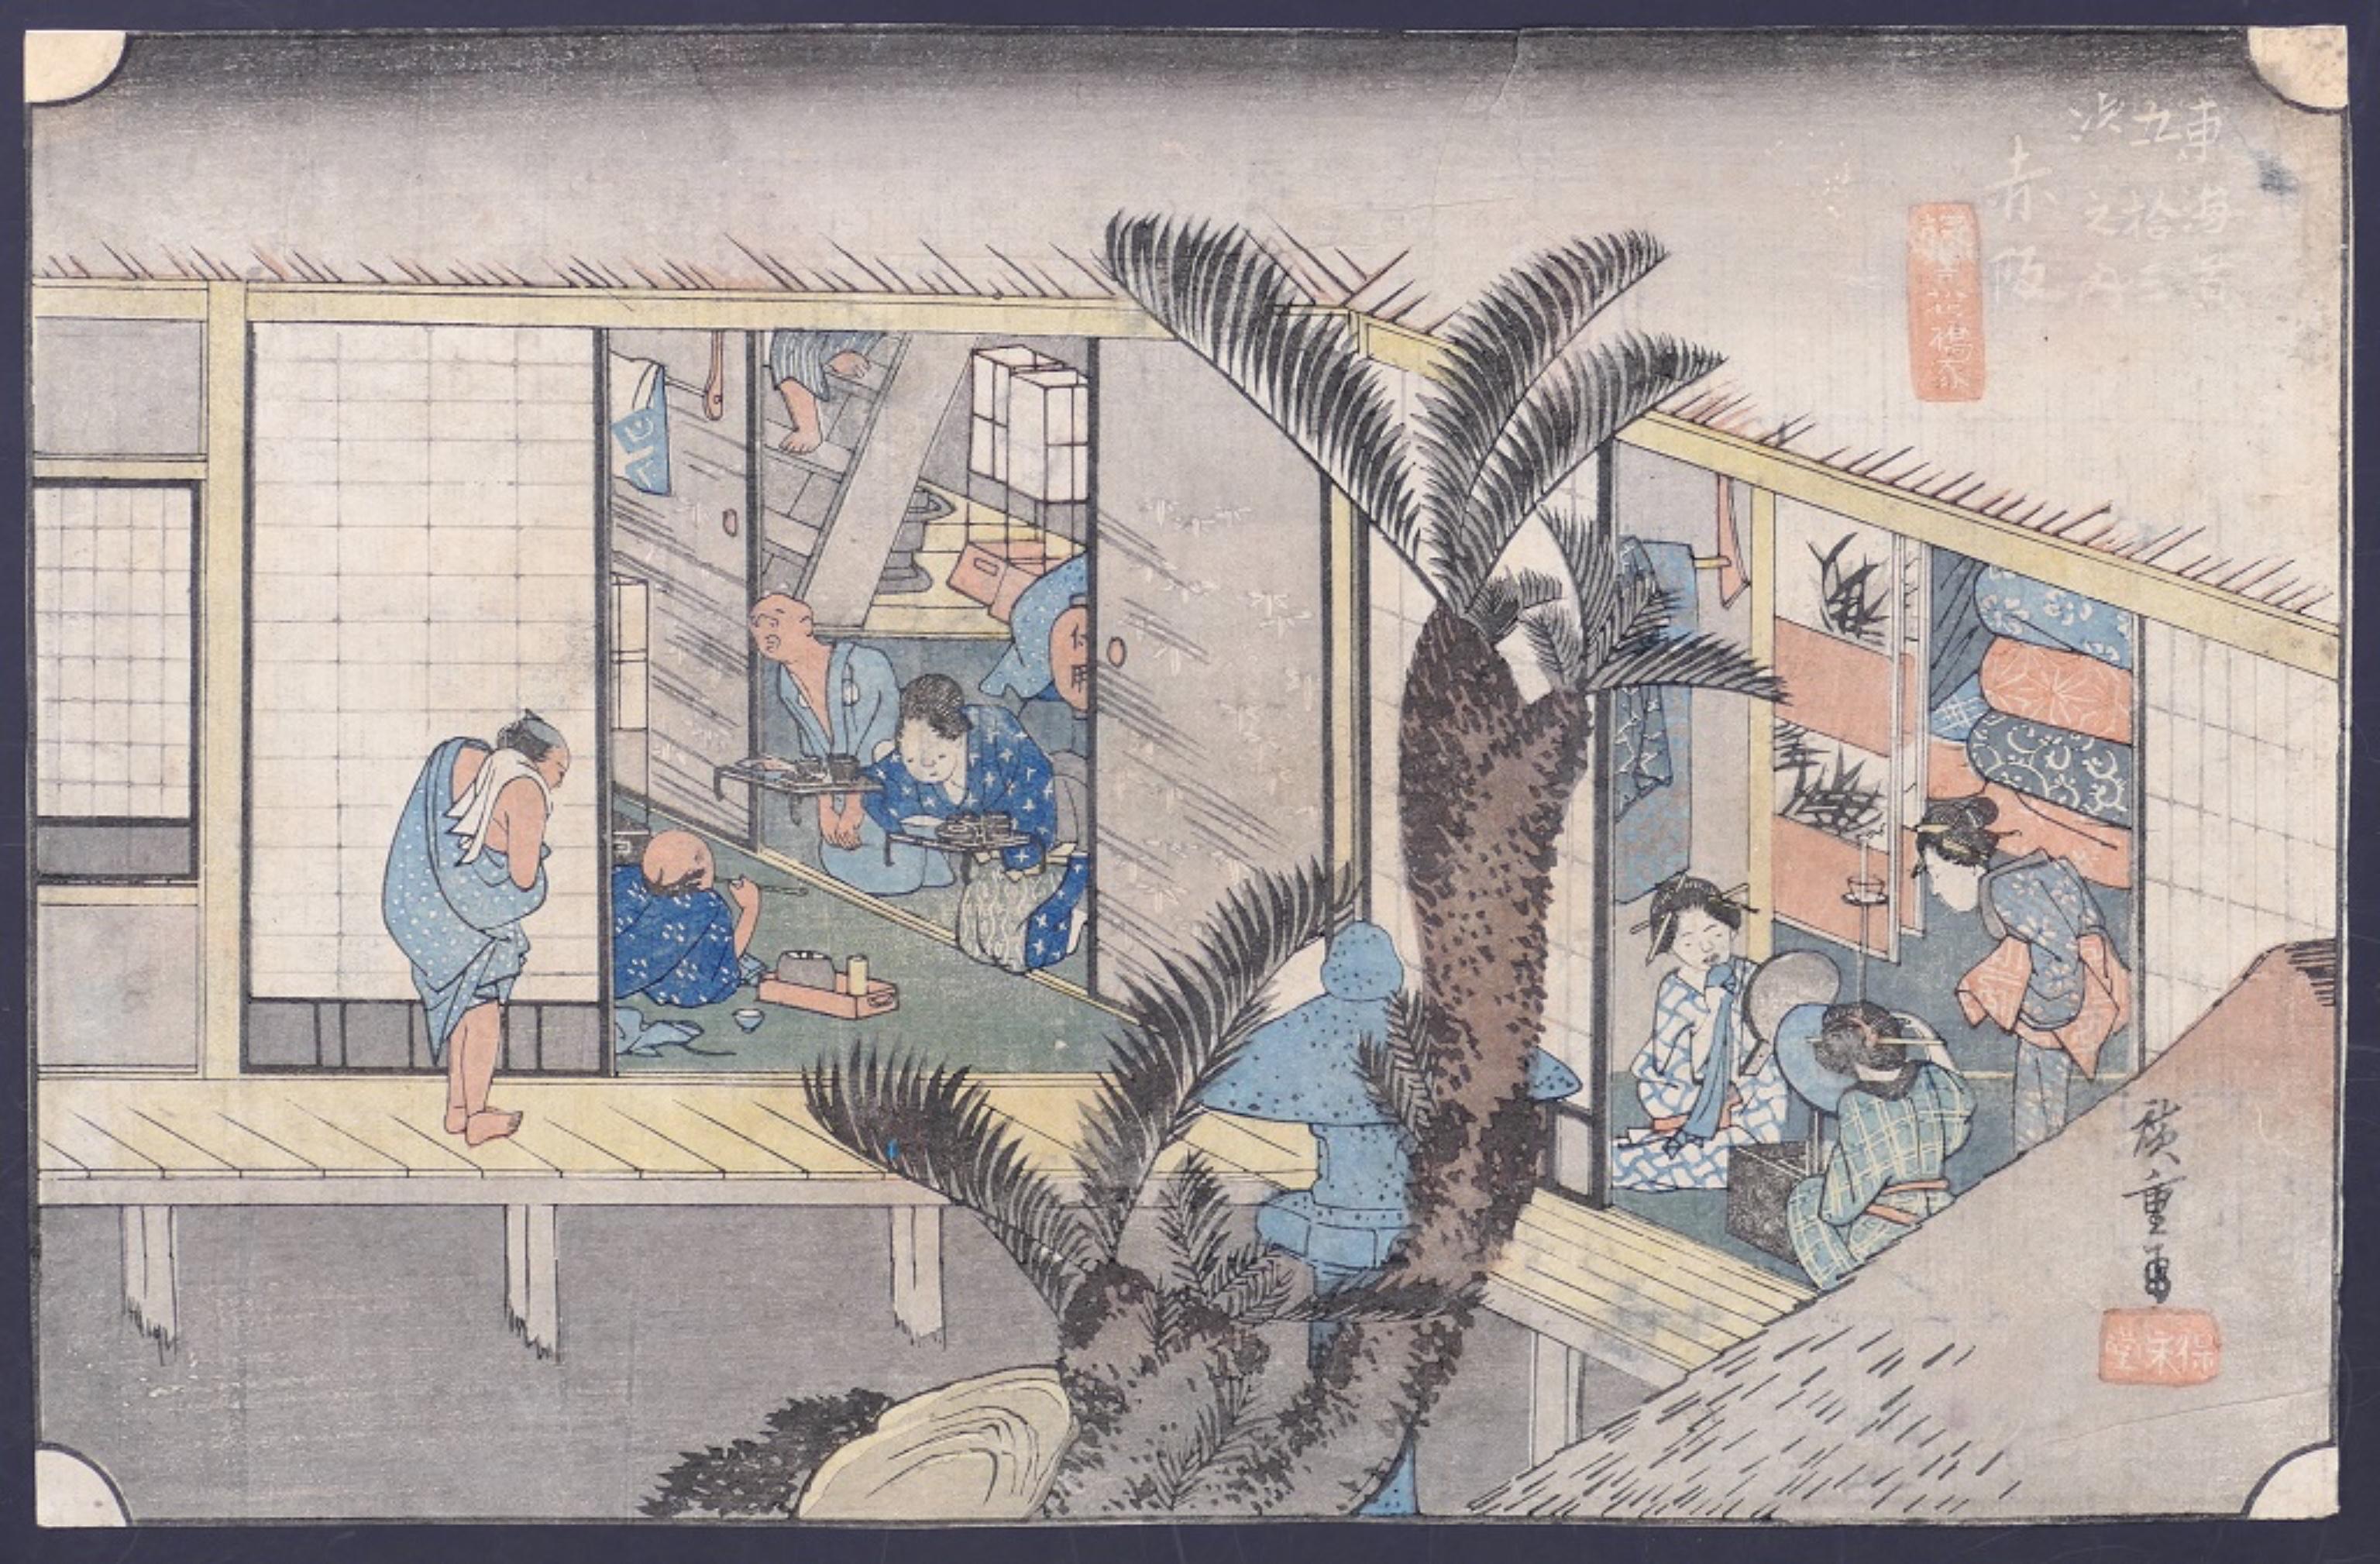 Akasaka ist ein polychromer Farbholzschnitt, die Platte Nr. 36 aus der Serie - Dreiundfünfzig Stationen des Tôkaidô (Ryosha Shofu npo Zu), entworfen von Utagawa Hiroshige (歌川 広重, 1797-1858) nach seiner Reise entlang des Tokaido im Jahr 1832 und